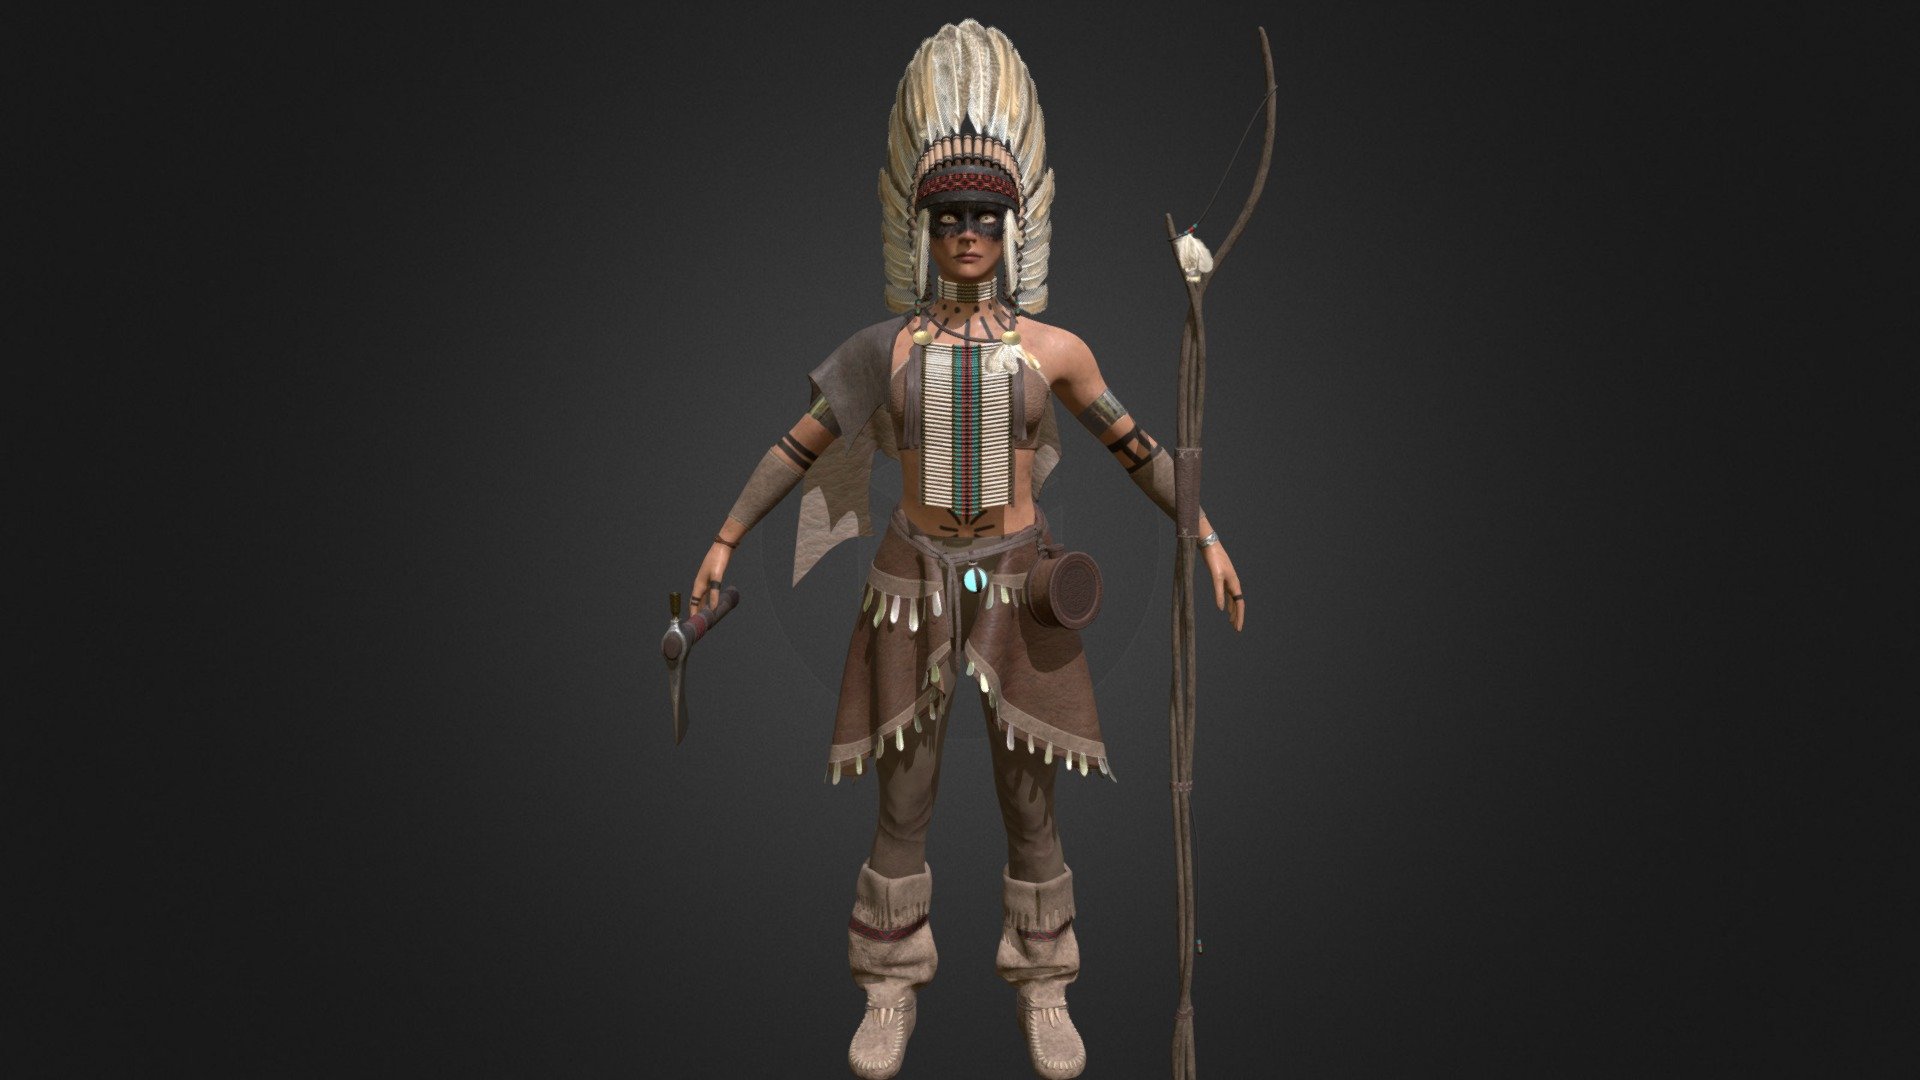 Native American - 3D model by datucarl 3d model